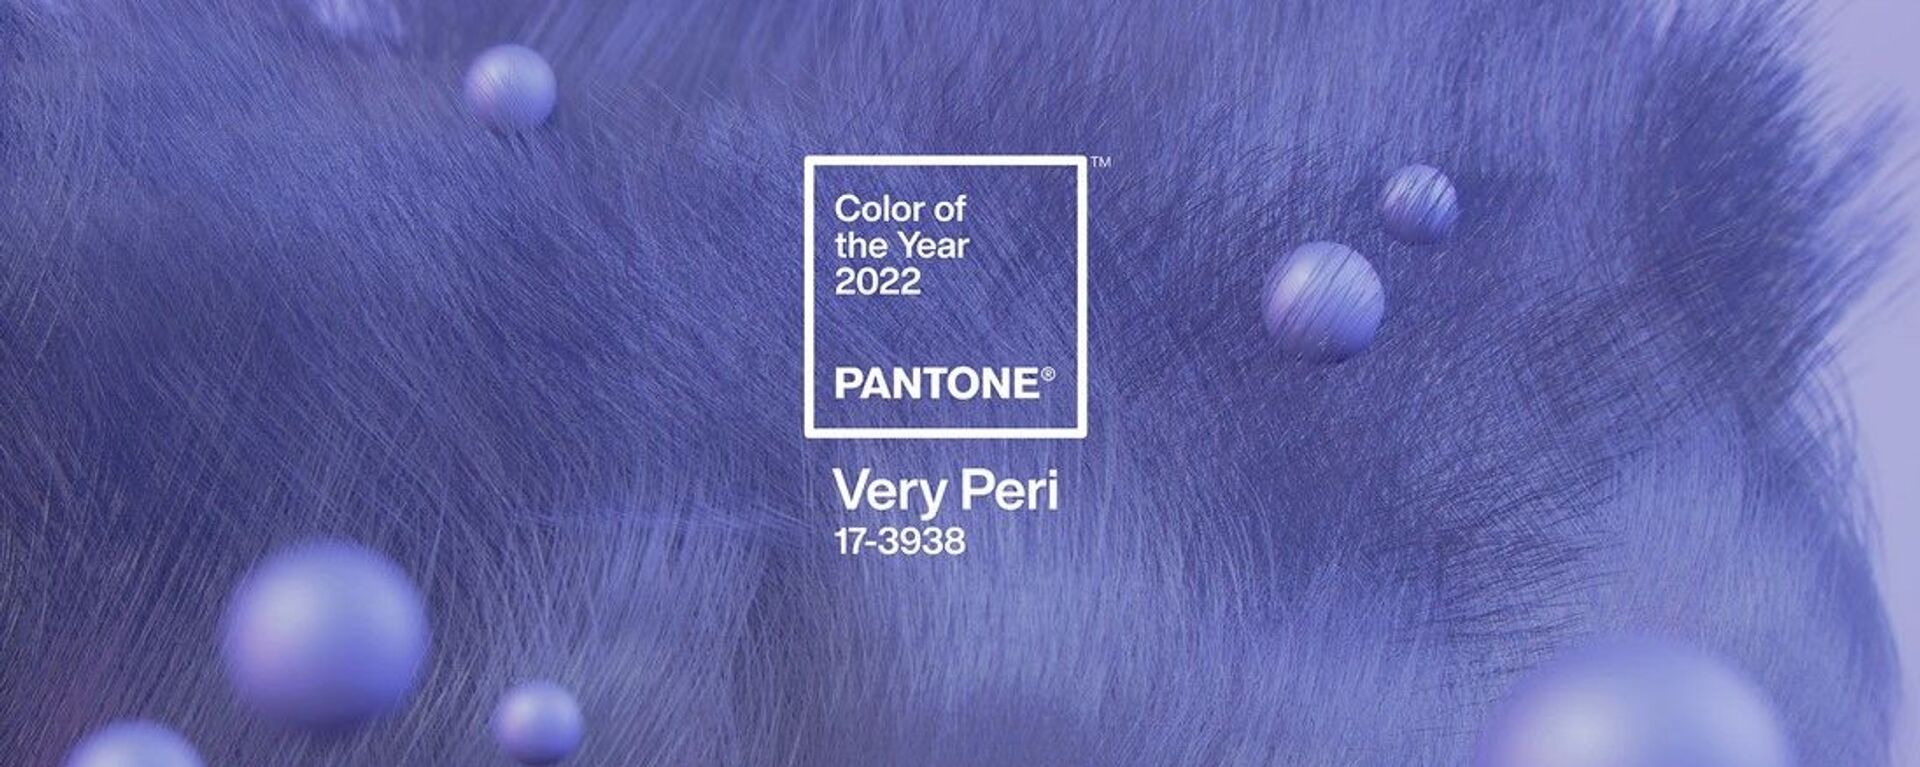 PANTONE 17-3938 Very Peri được đặt tên là màu chủ đạo của năm 2022 - Sputnik Việt Nam, 1920, 09.12.2021